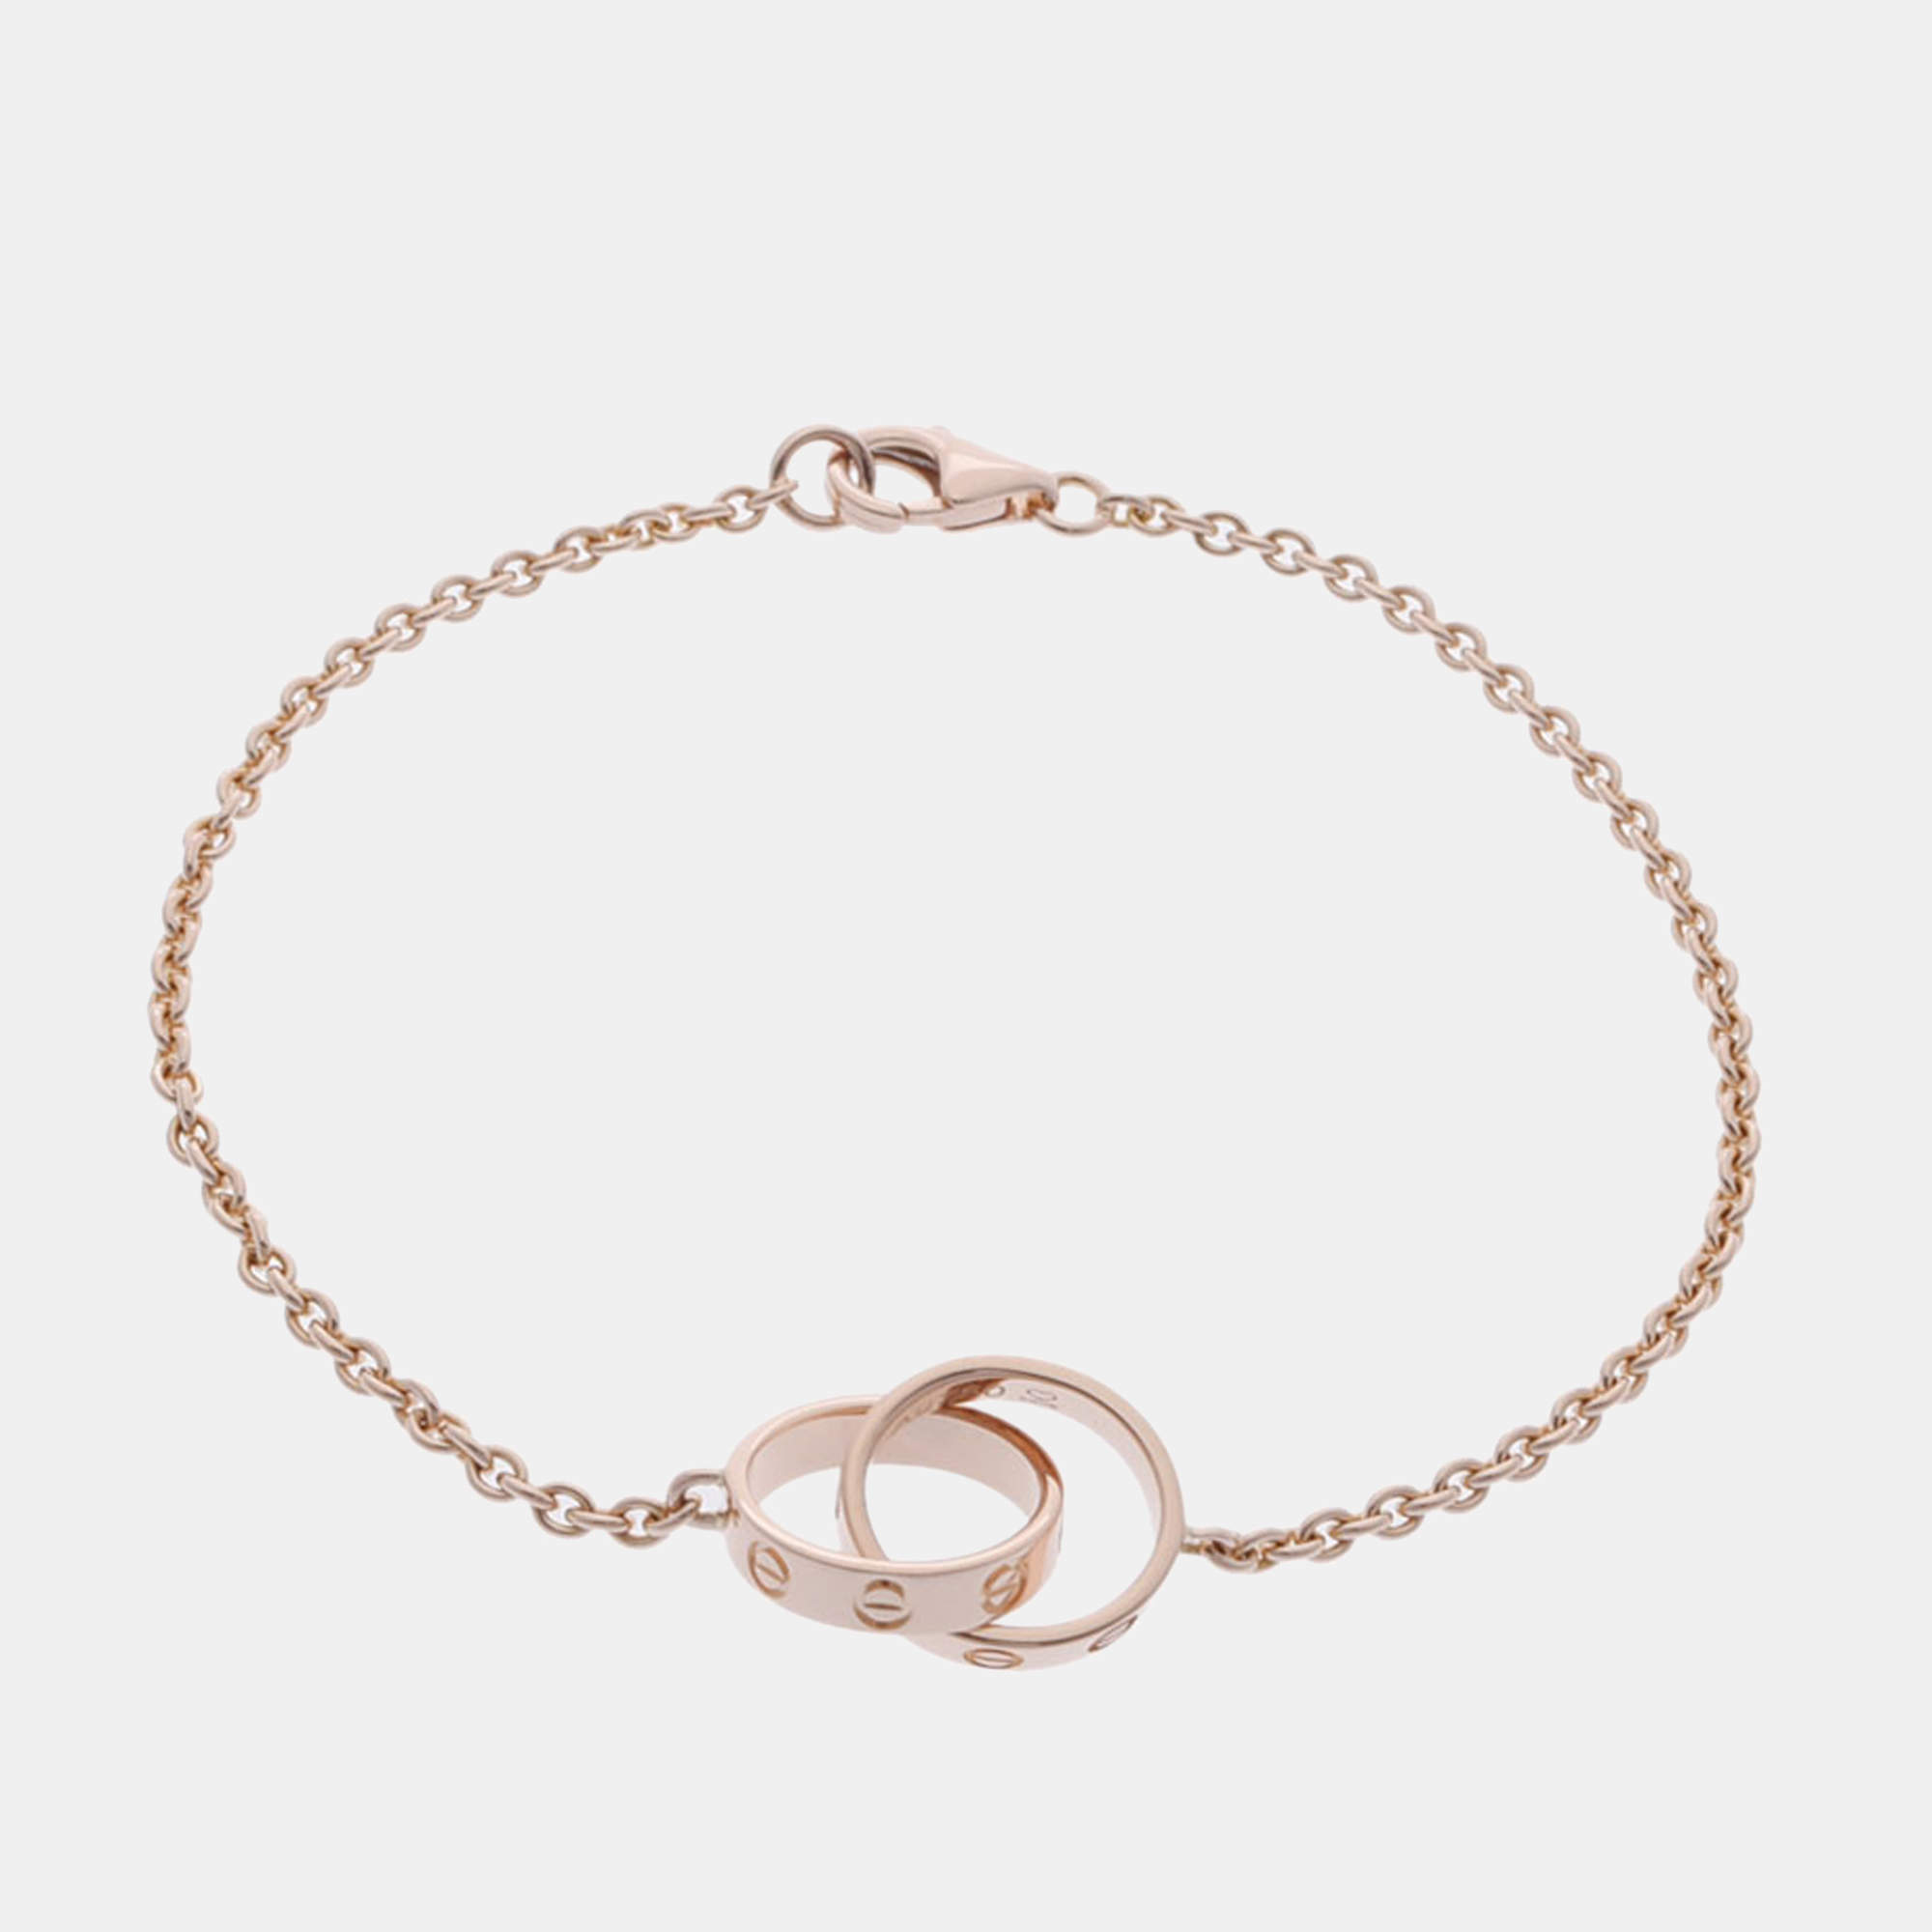 CRB6027000 - LOVE bracelet - Rose gold